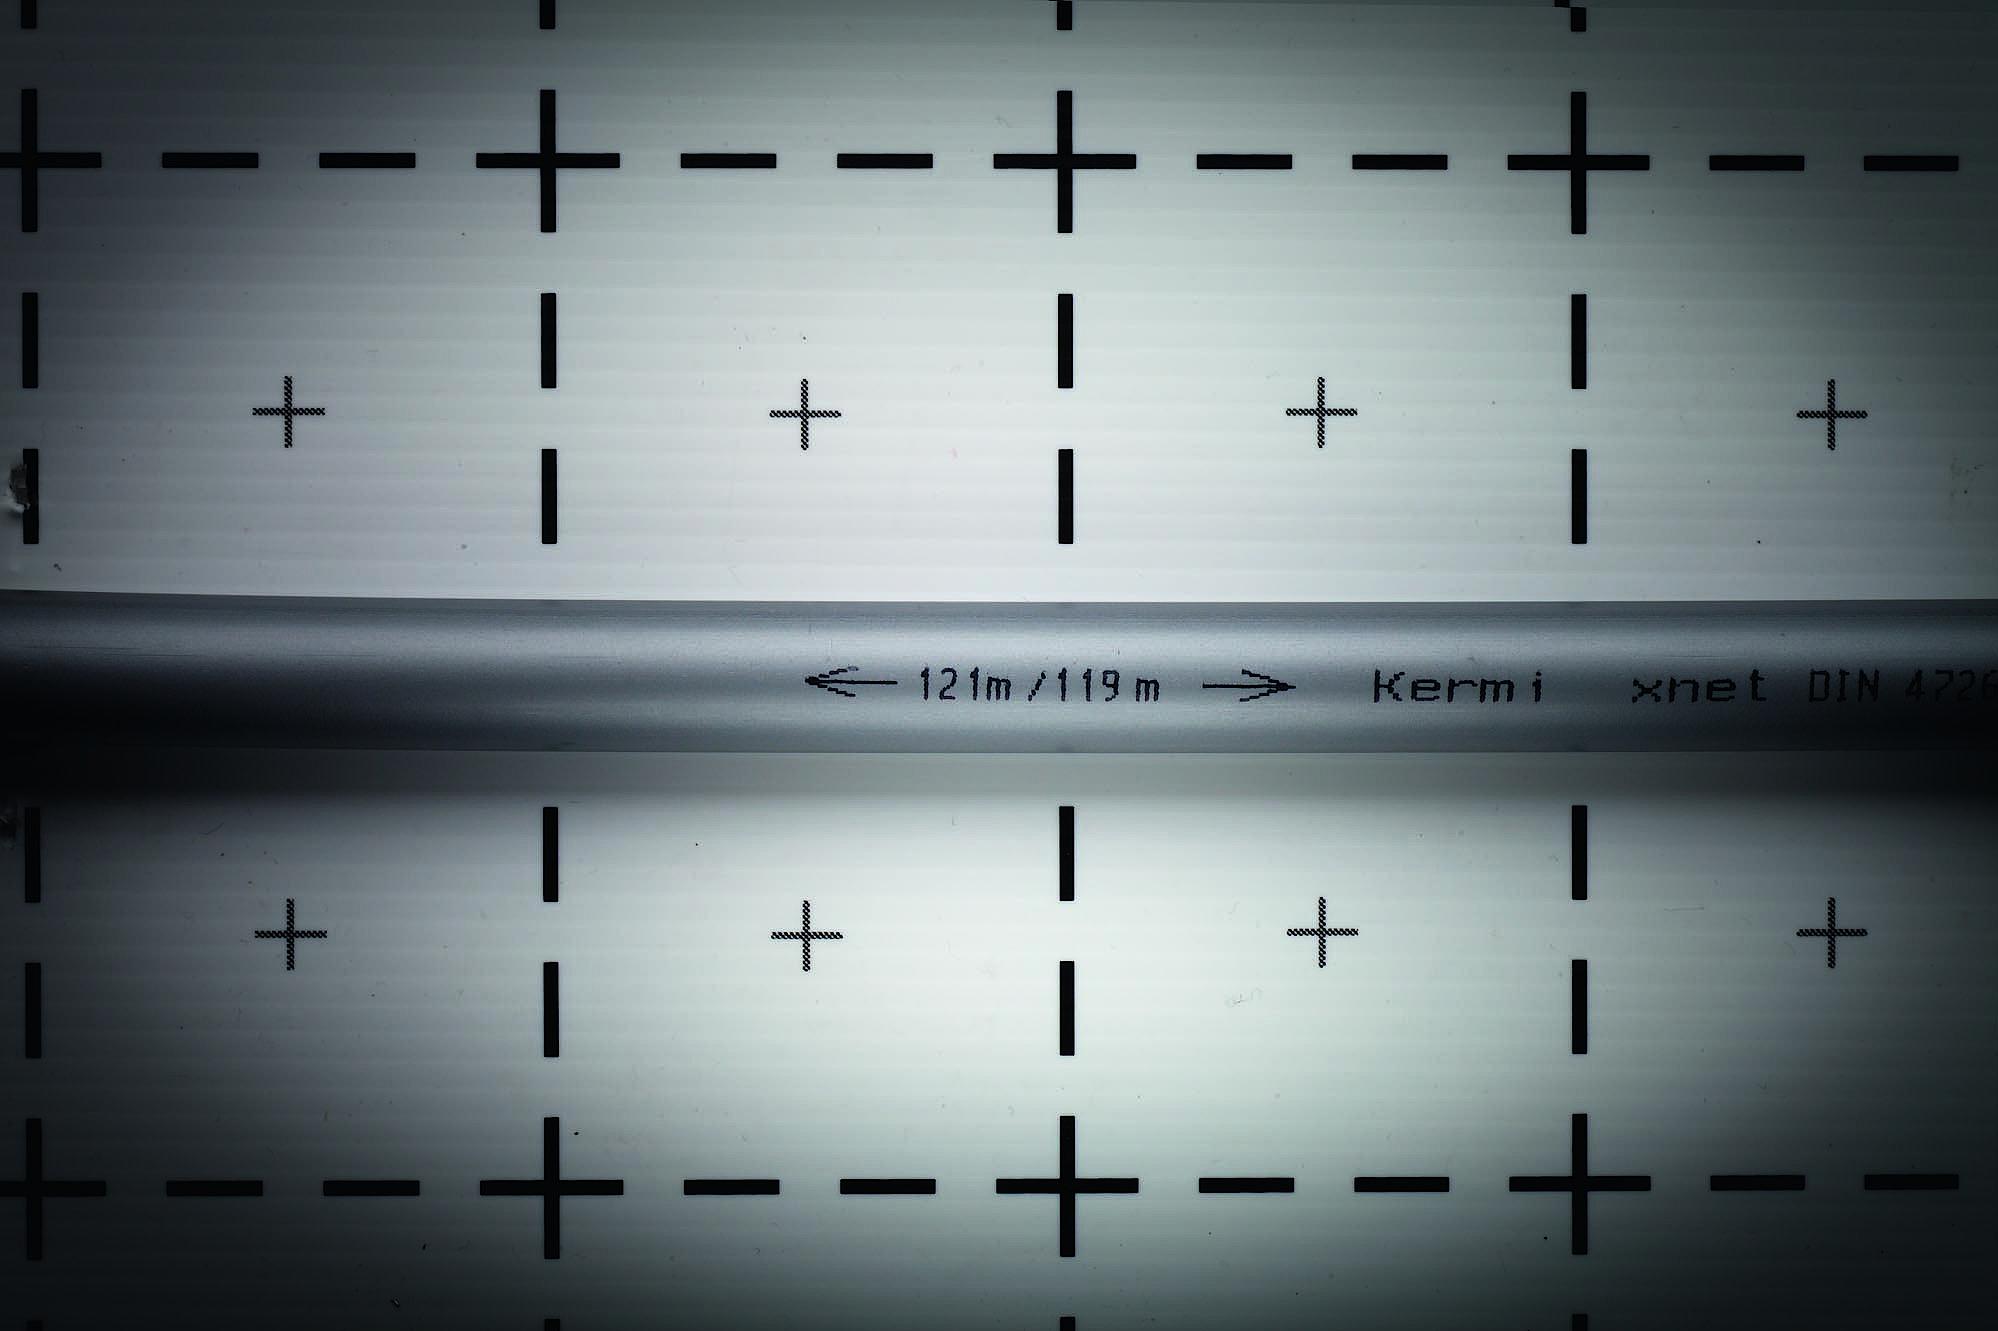 Kermi x-net 5vrstvá PE-Xc Potisk trubky s údajem o zbývající délce a již spotřebované délce trubky k optimálnímu využití svazku trubek.